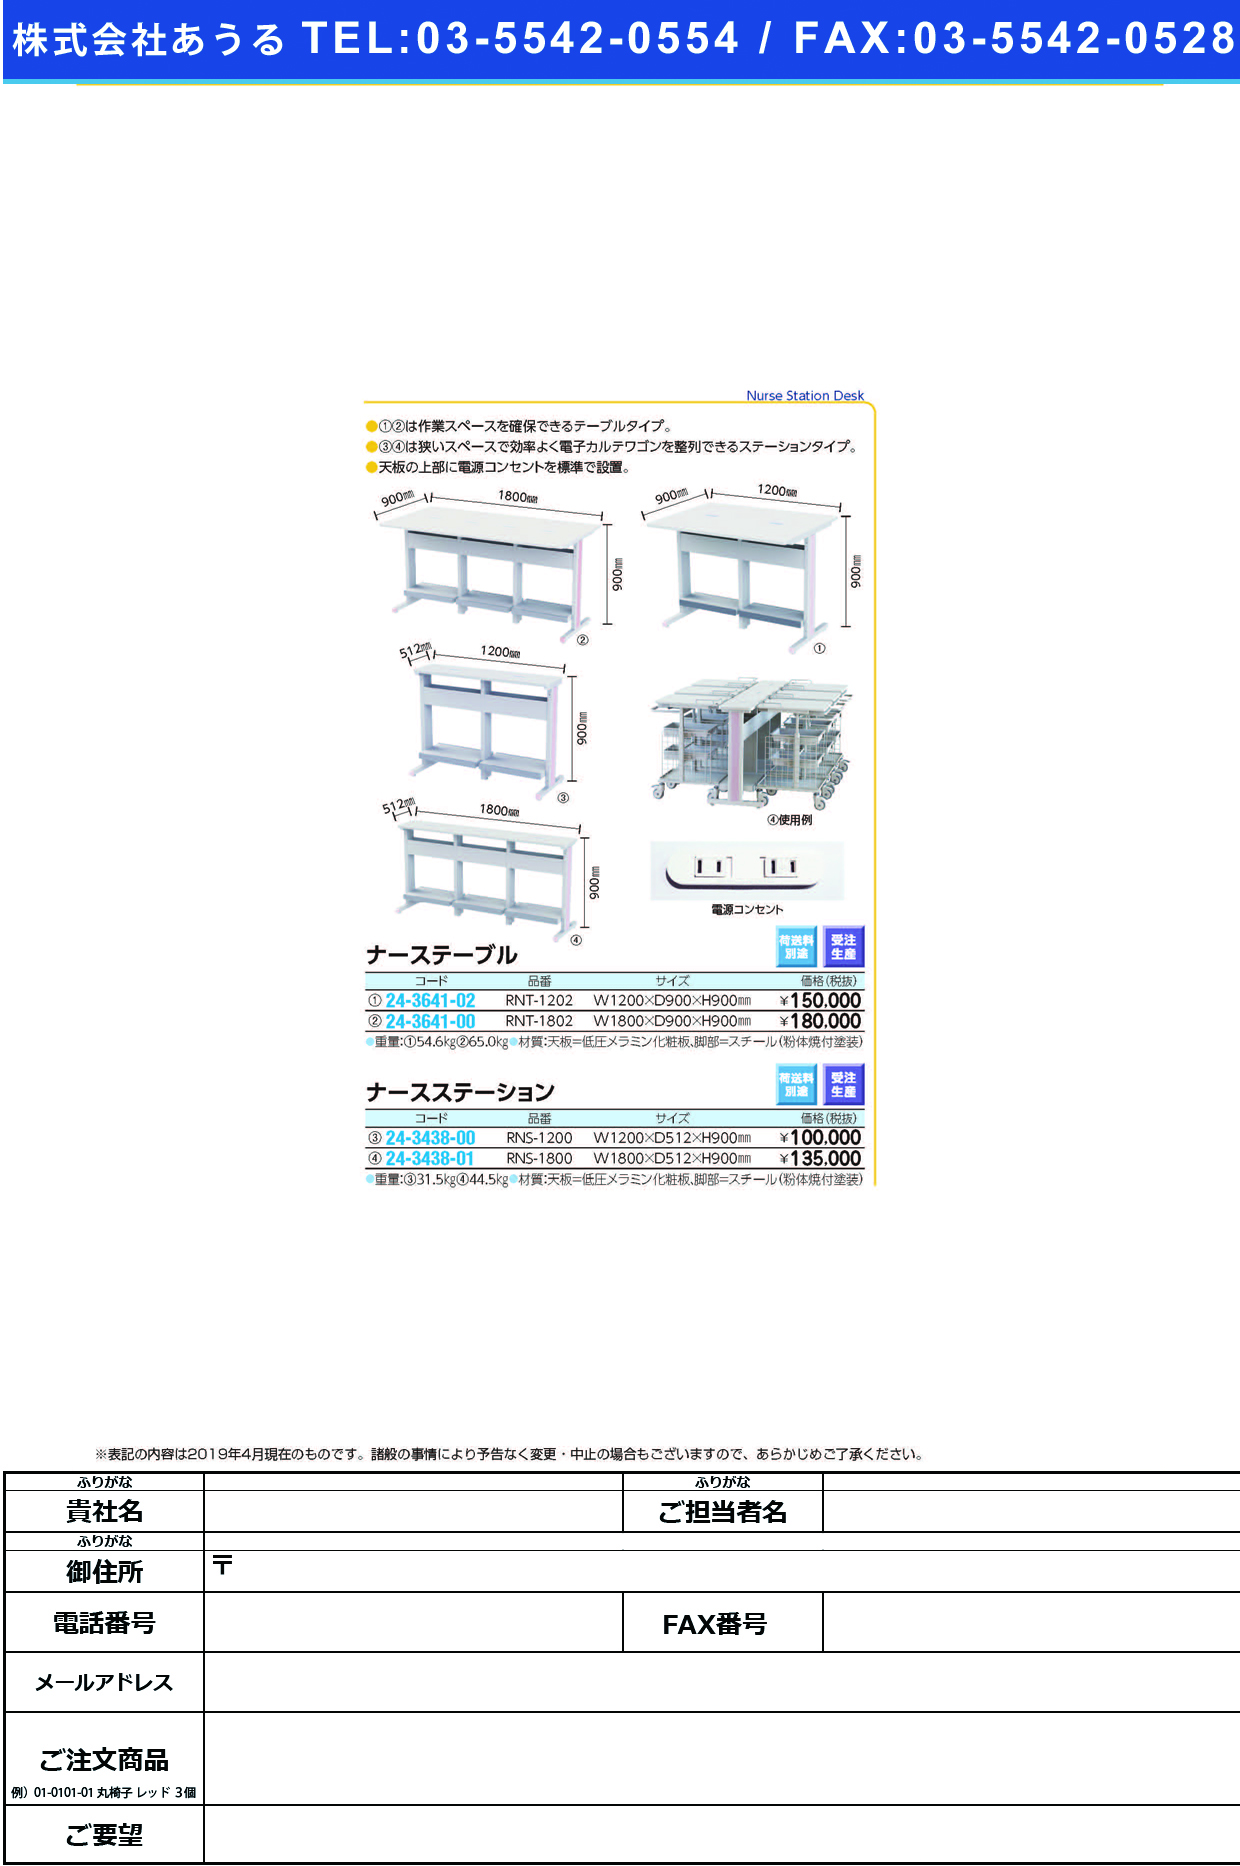 (24-3438-00)ナースステーション RNS-1200 ﾅｰｽｽﾃｰｼｮﾝ(ナカバヤシ)【1台単位】【2019年カタログ商品】